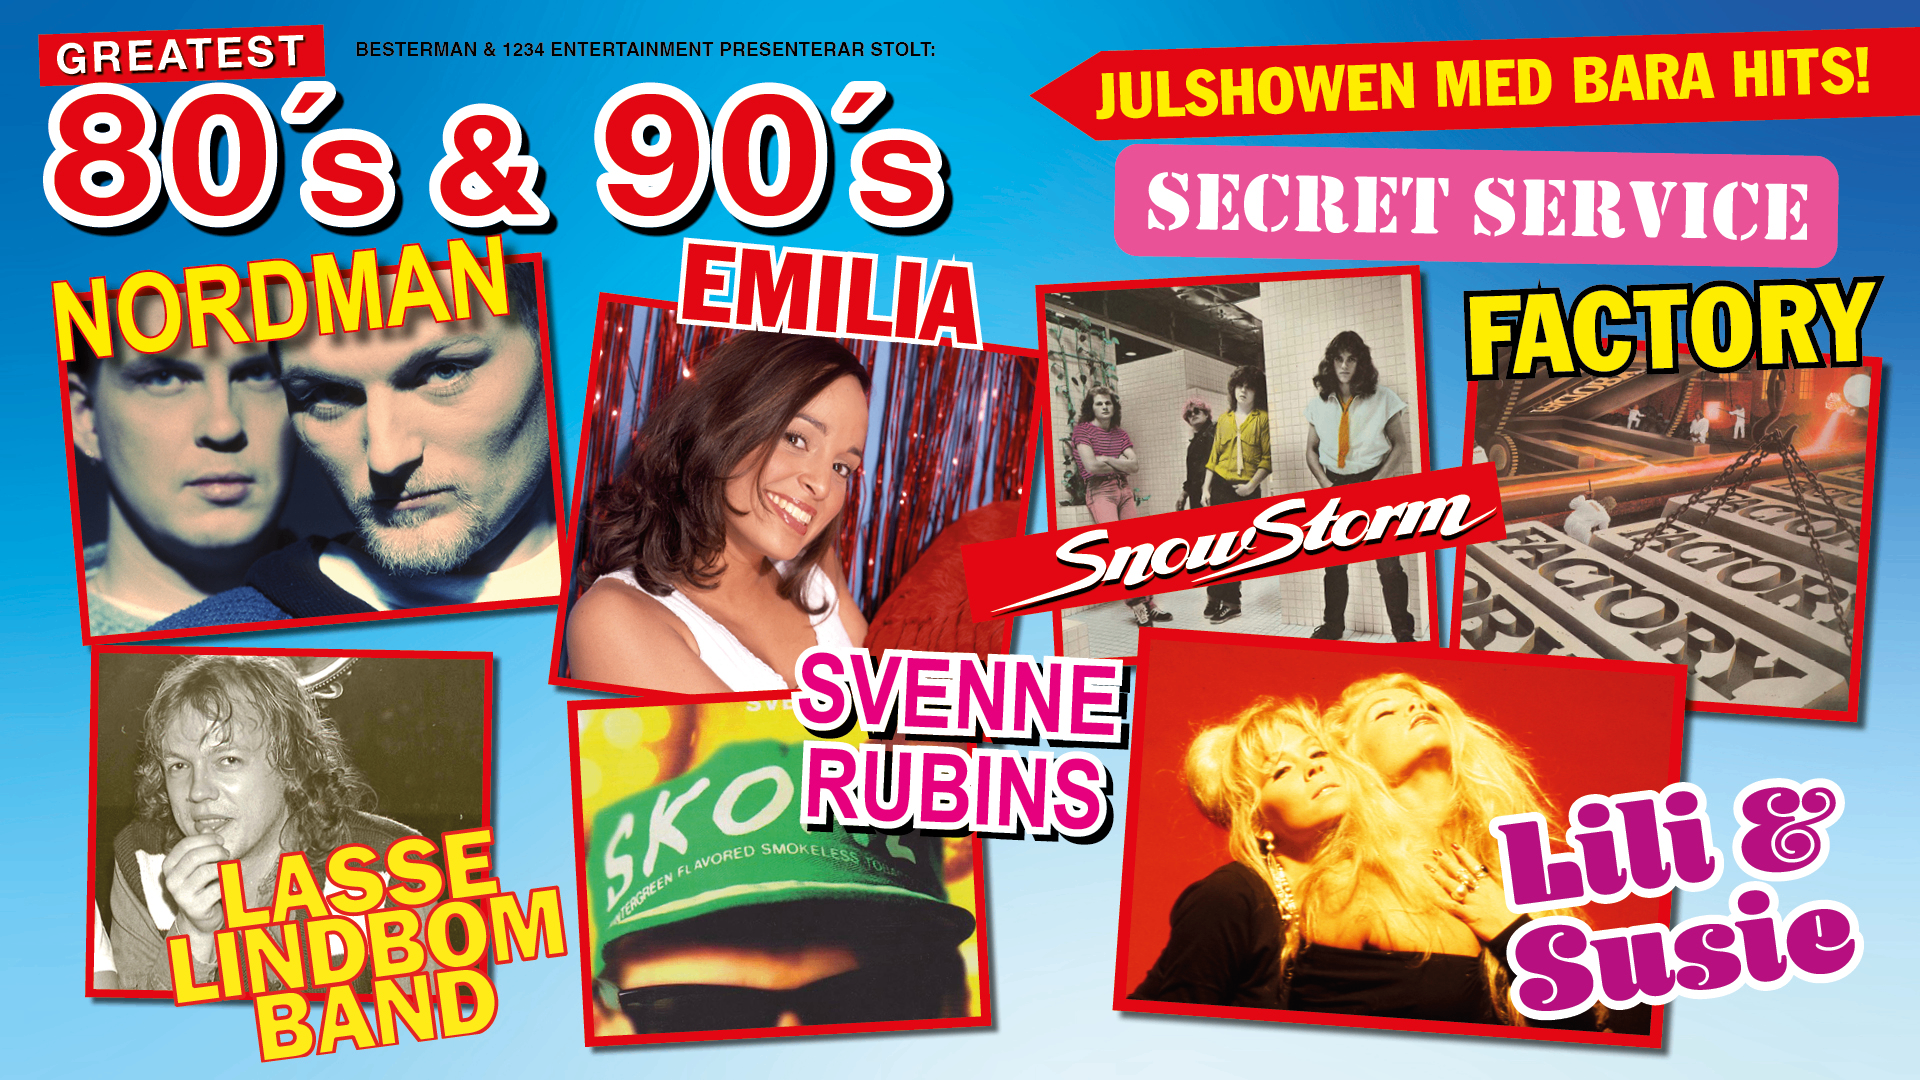 Bildbeskrivning saknas för evenemanget: Greatest 80s & 90s - Julshowen med bara hits